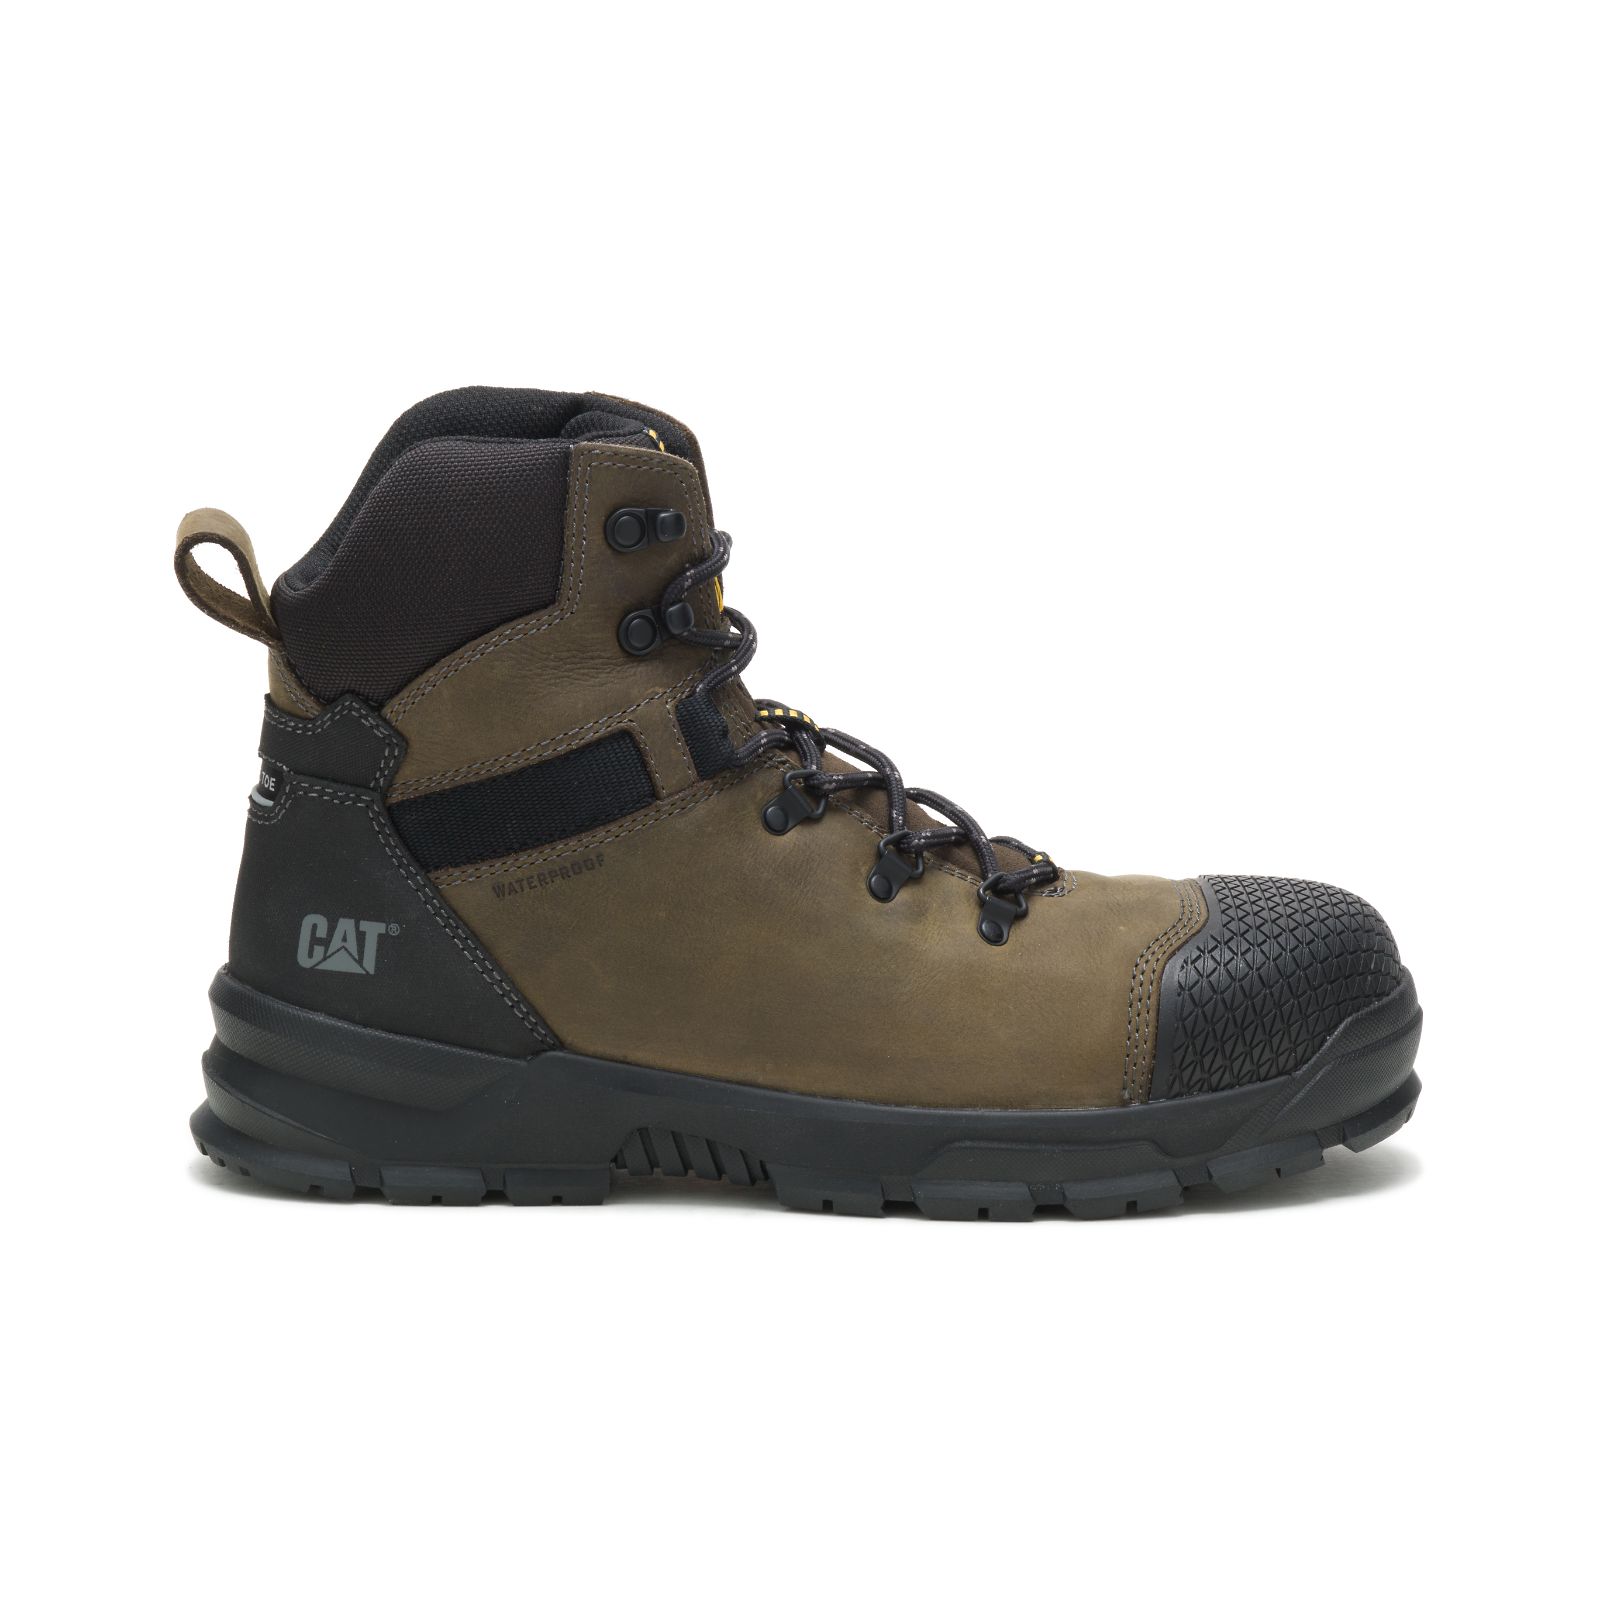 Caterpillar Accomplice X Waterproof Steel Toe - Mens Work Boots - Deep Green/Black - NZ (245EUHMXR)